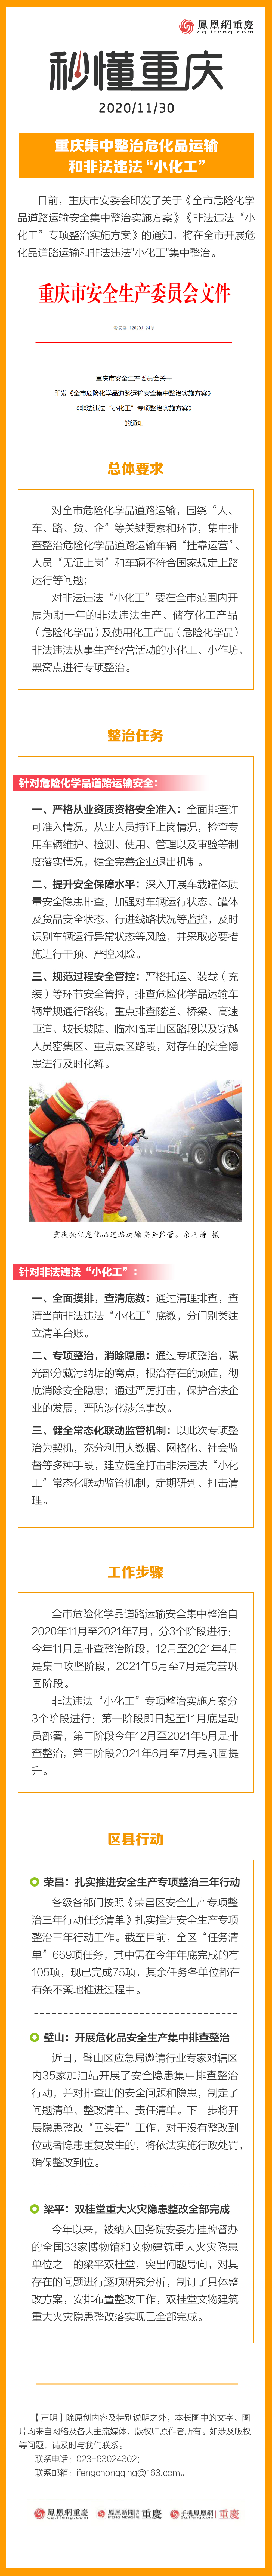 秒懂重庆 | 重庆集中整治危化品运输和非法违法“小化工”